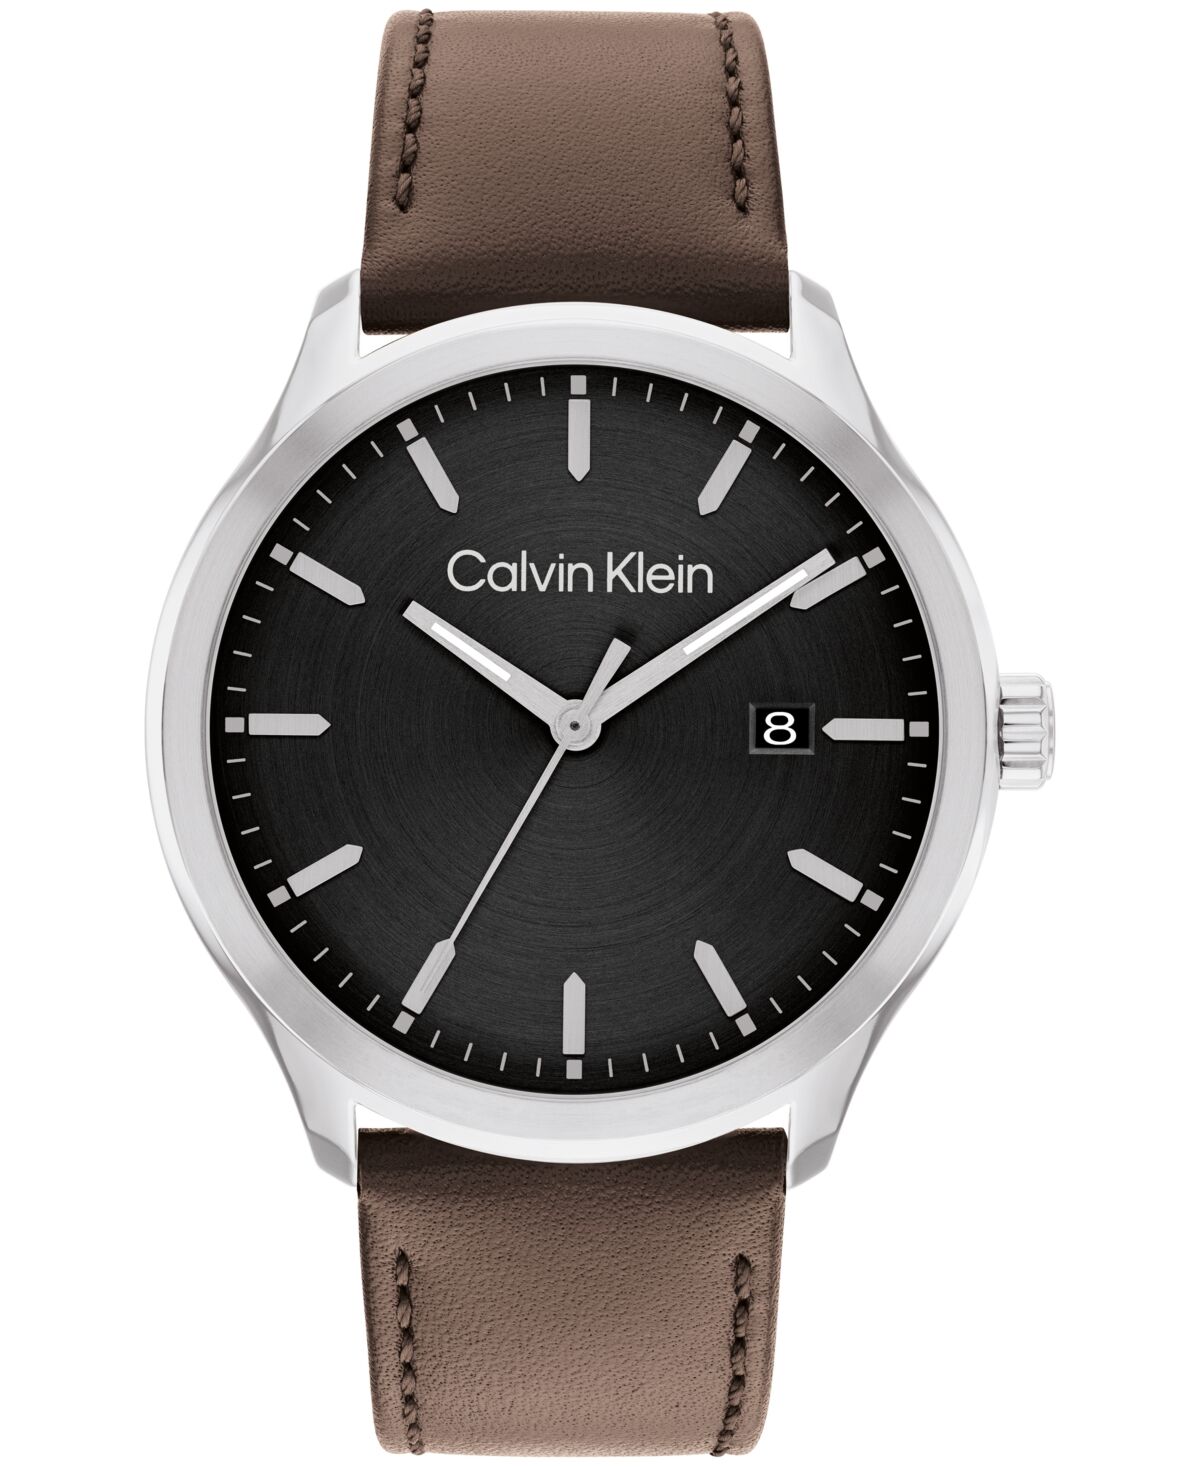 Calvin Klein Men's 3H Quartz Brown Leather Strap Watch 43mm - Brown